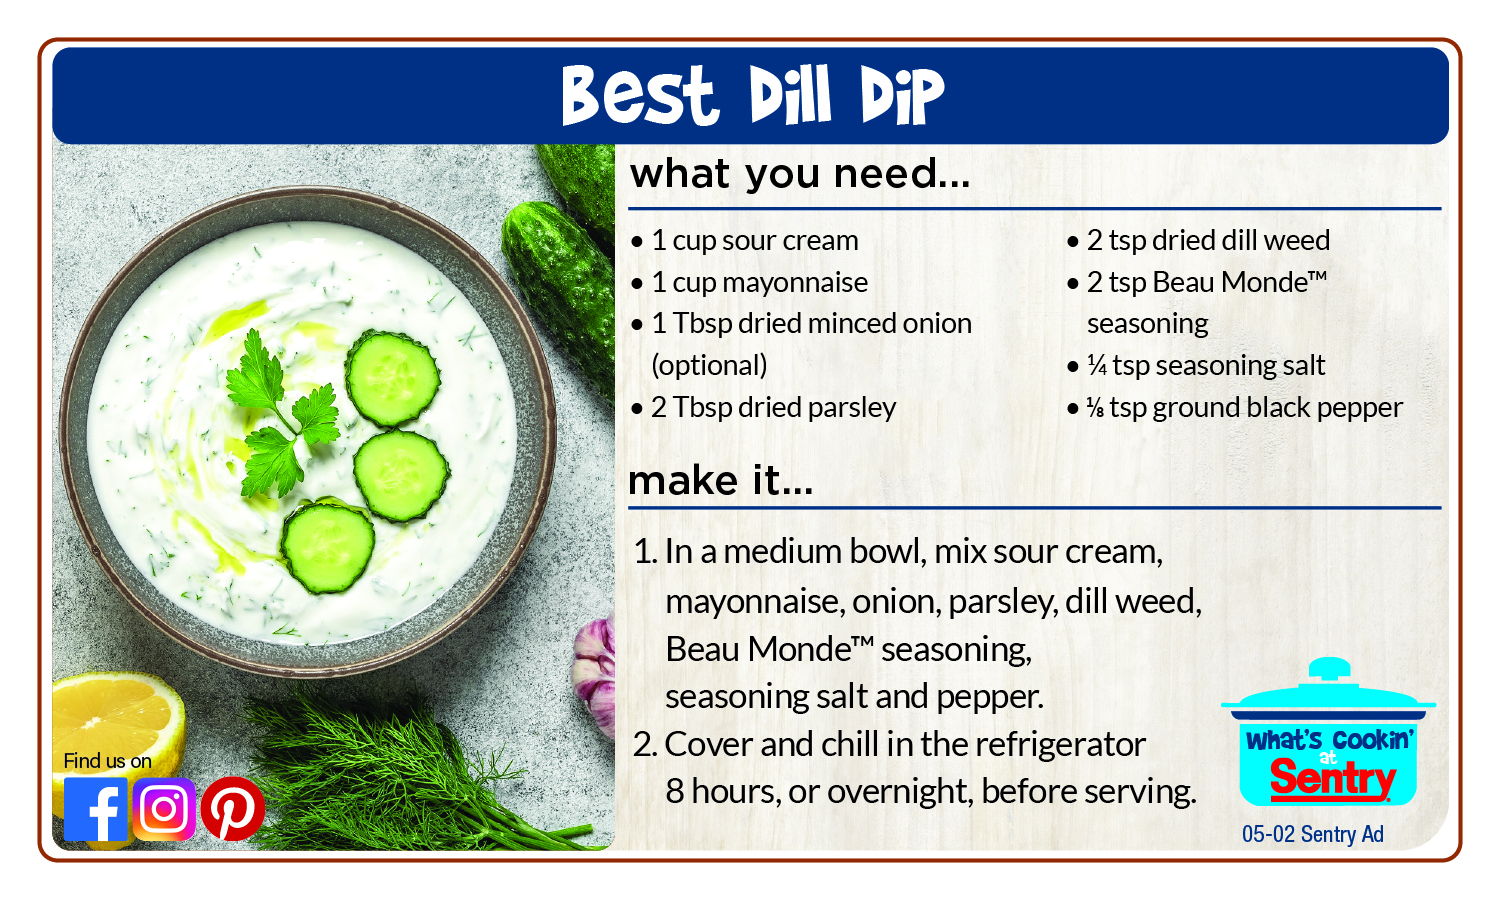 Recipe: Best Dill Dip